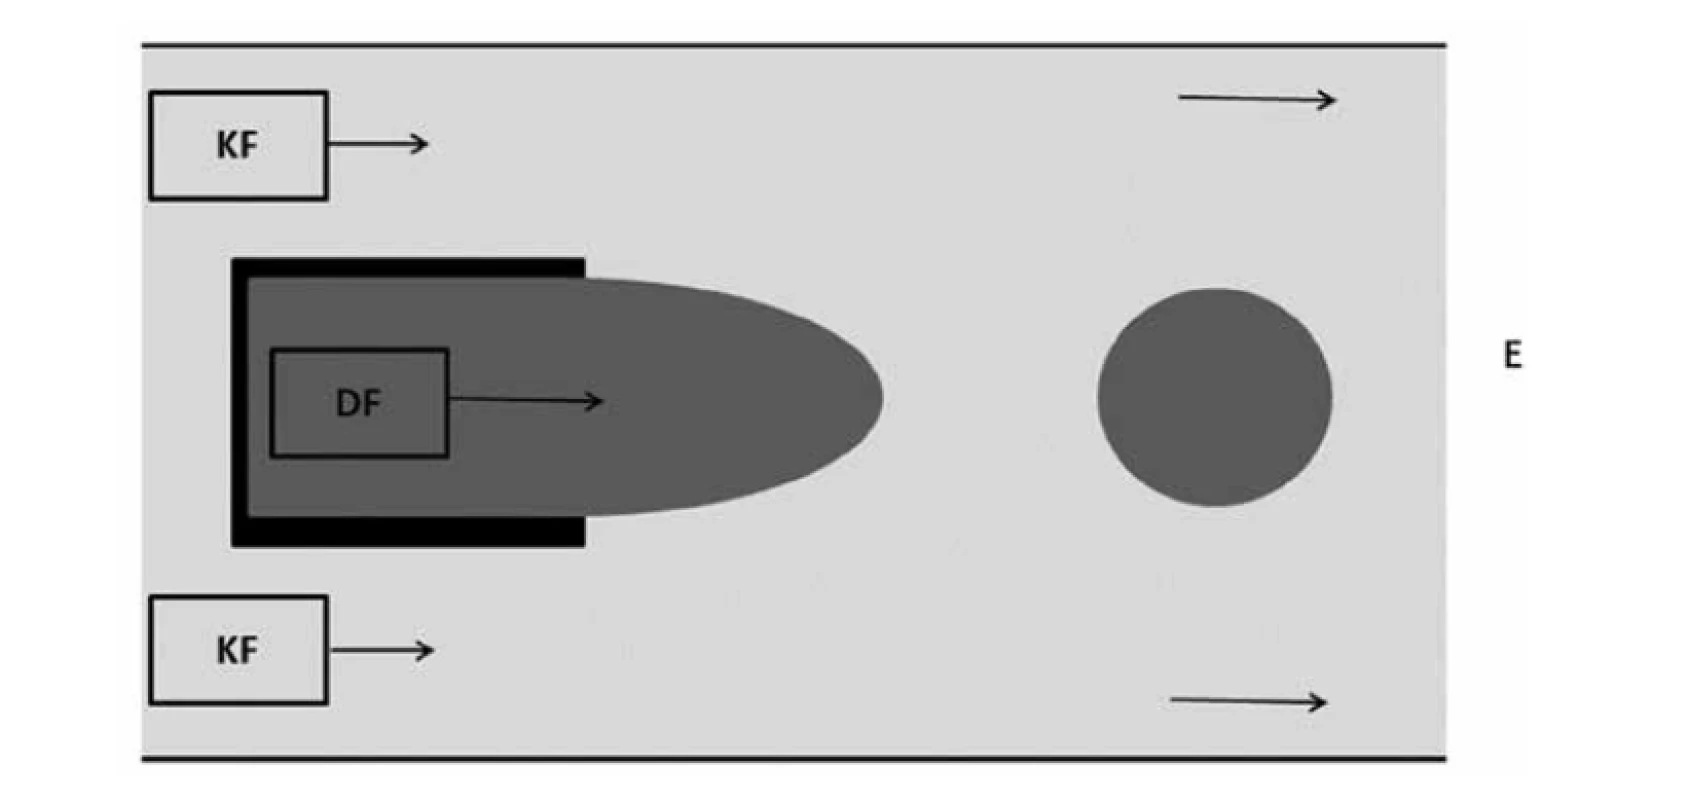 Uspořádání typu souběžného toku (přepracováno dle16))<br>
DF – dispergovaná fáze, KF – kontinuální fáze, E – emulze